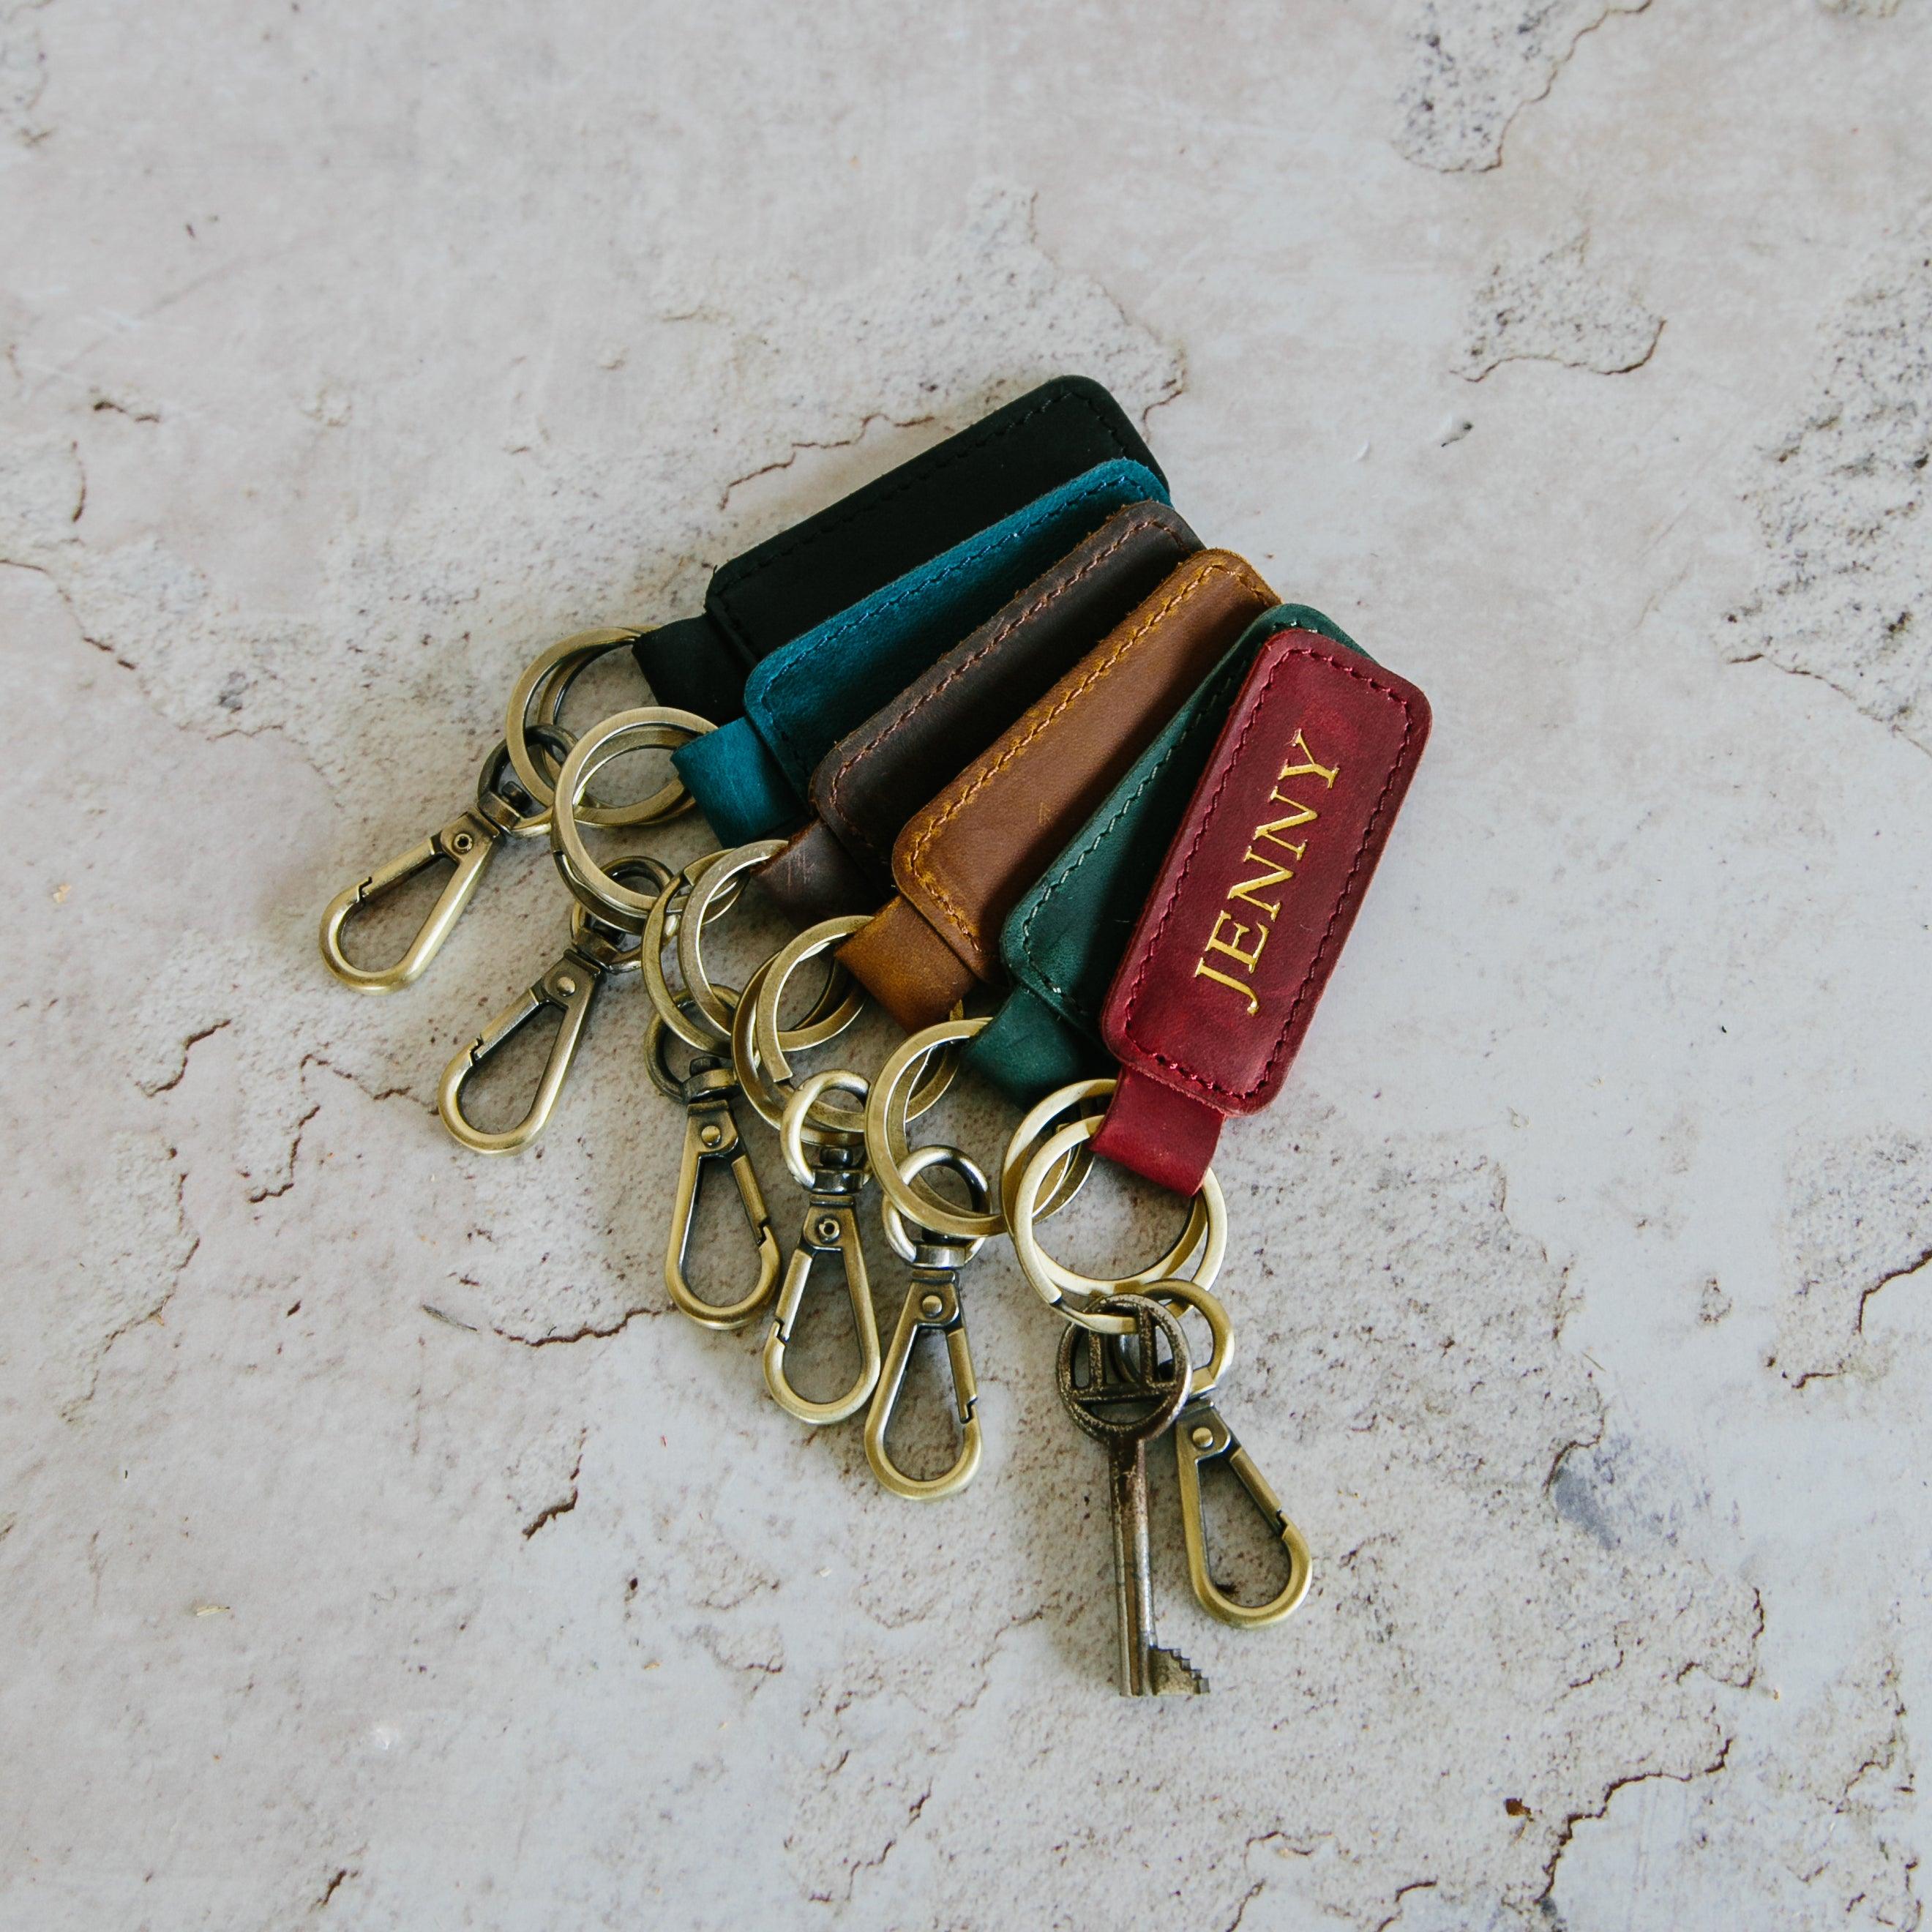 Personalisierter Schlüsselanhänger  Schlüsselanhänger mit Namen – Mein  Monogramm